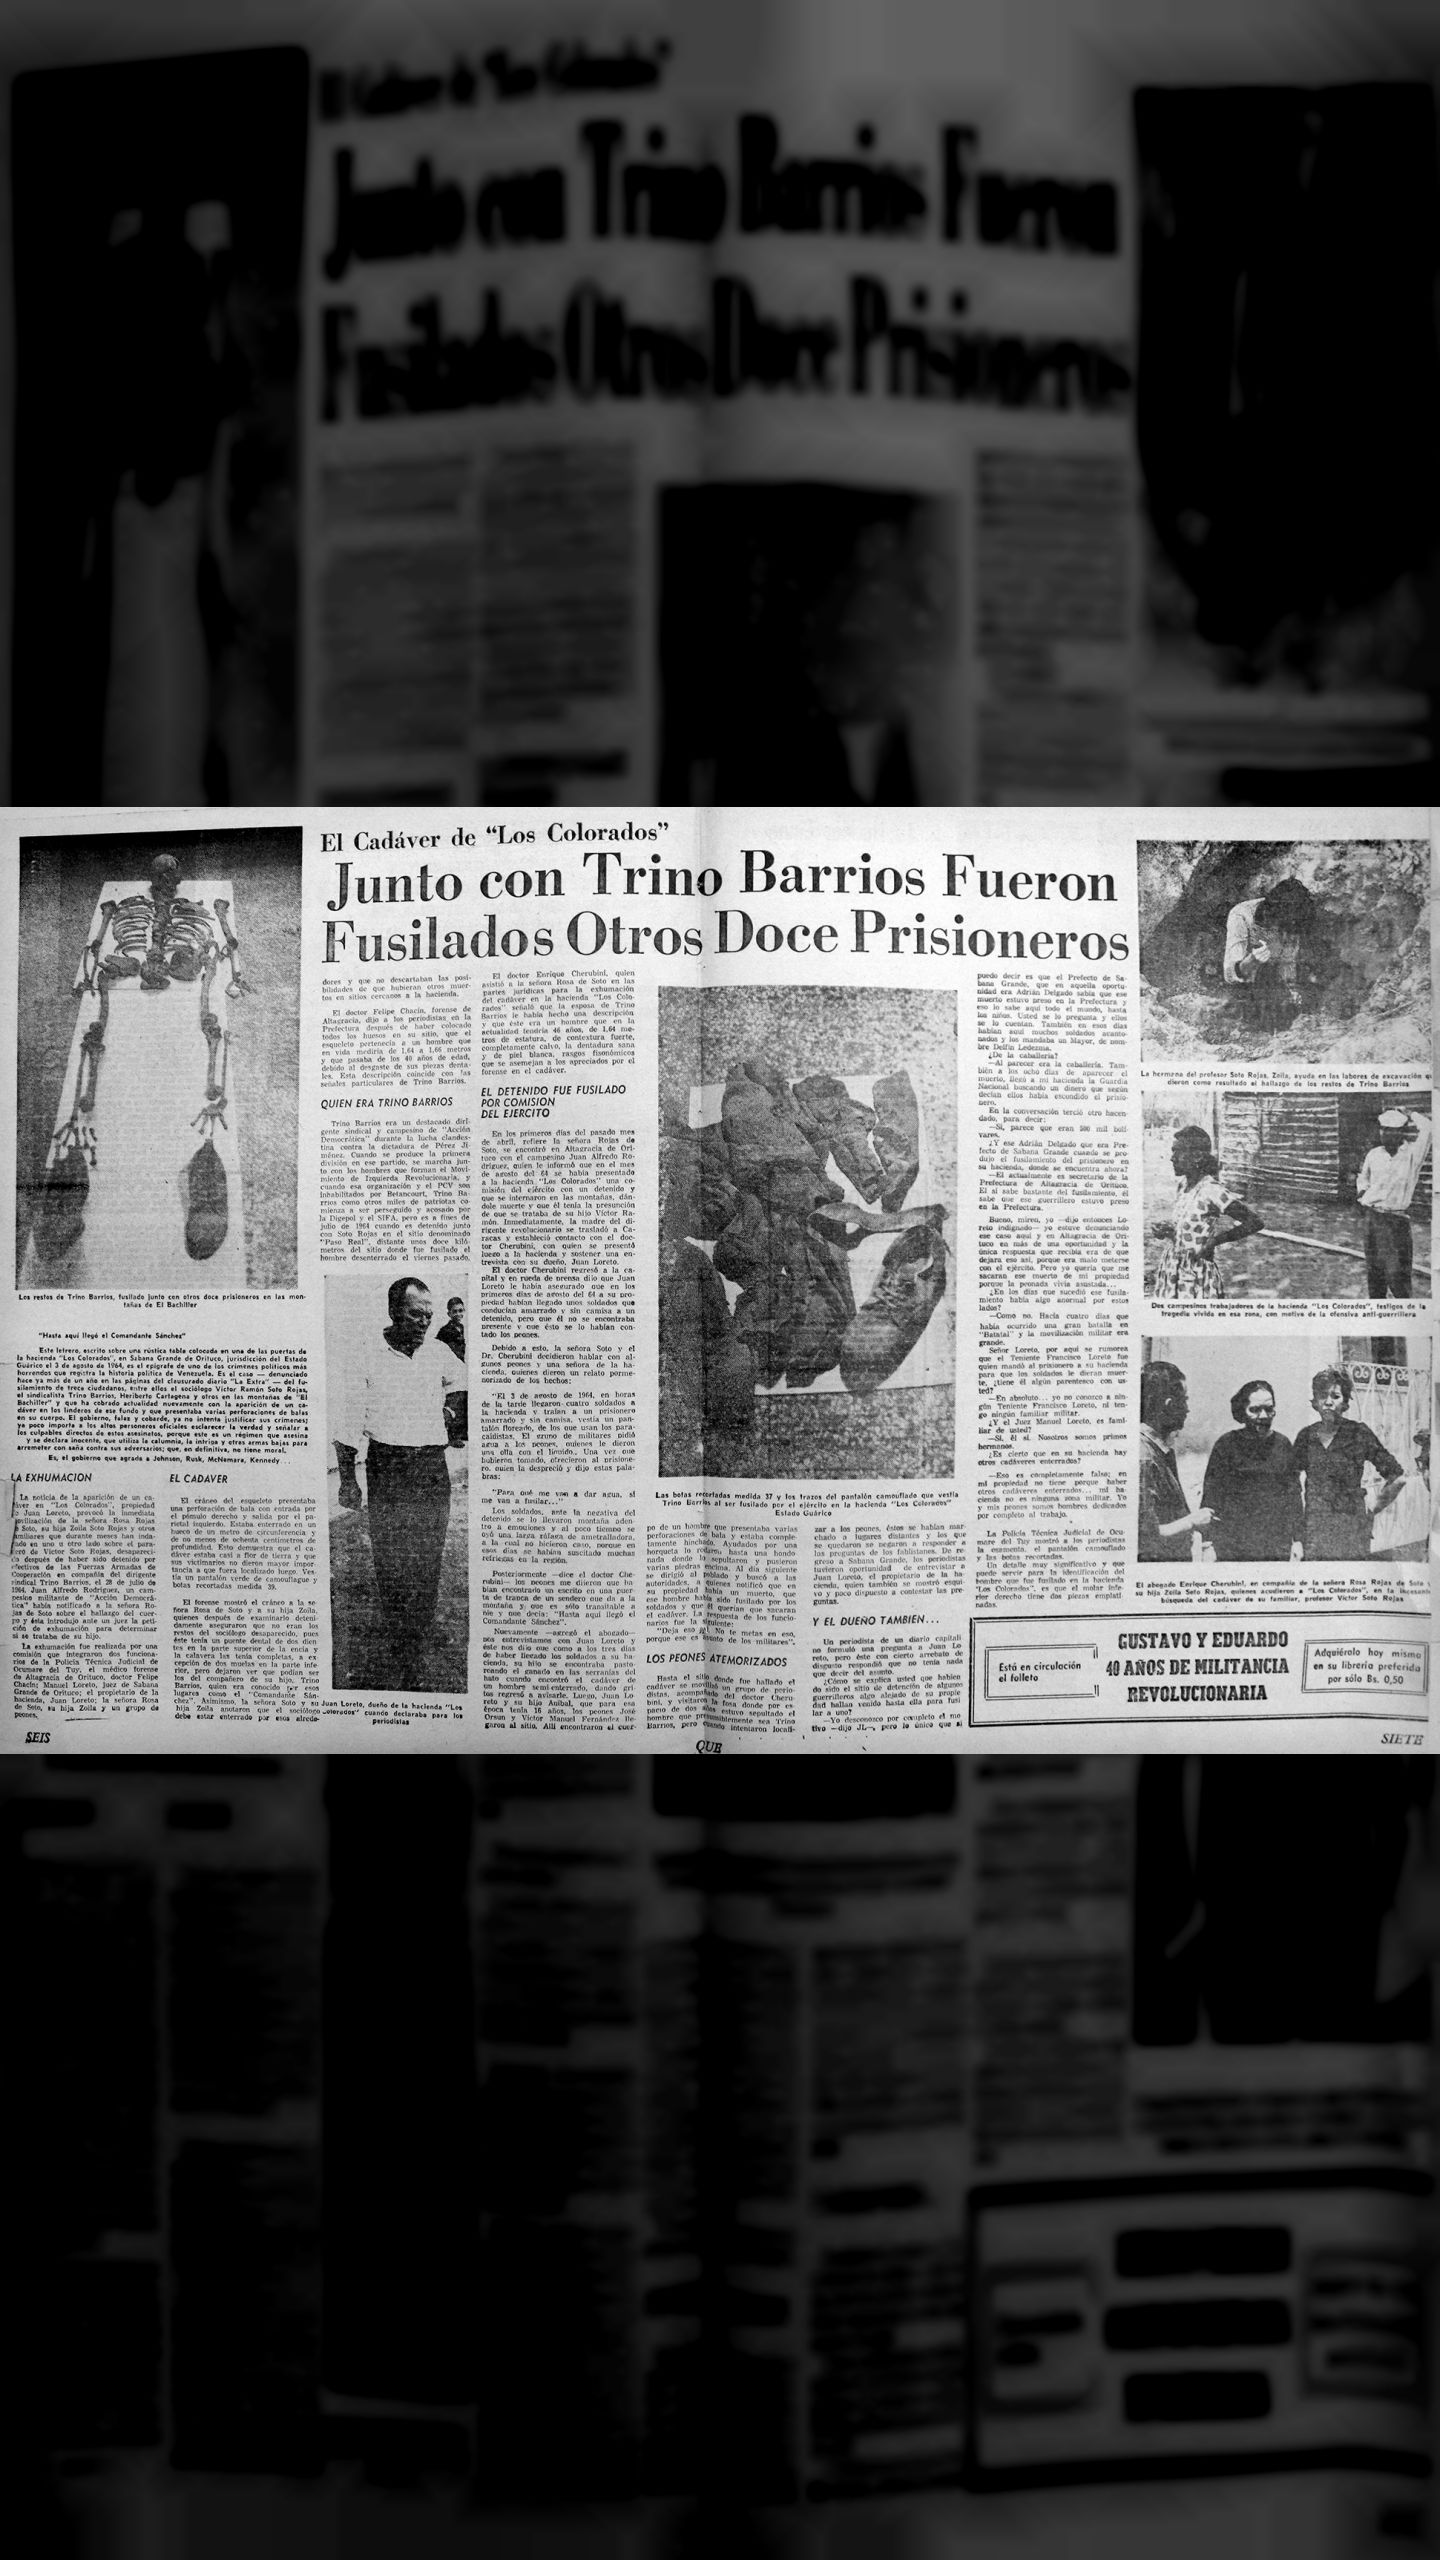 El Comandante Sánchez, Trino Barrios, junto con otros doce prisioneros fueron fusilados (QUÉ pasa en Venezuela, 20 de mayo 1966)